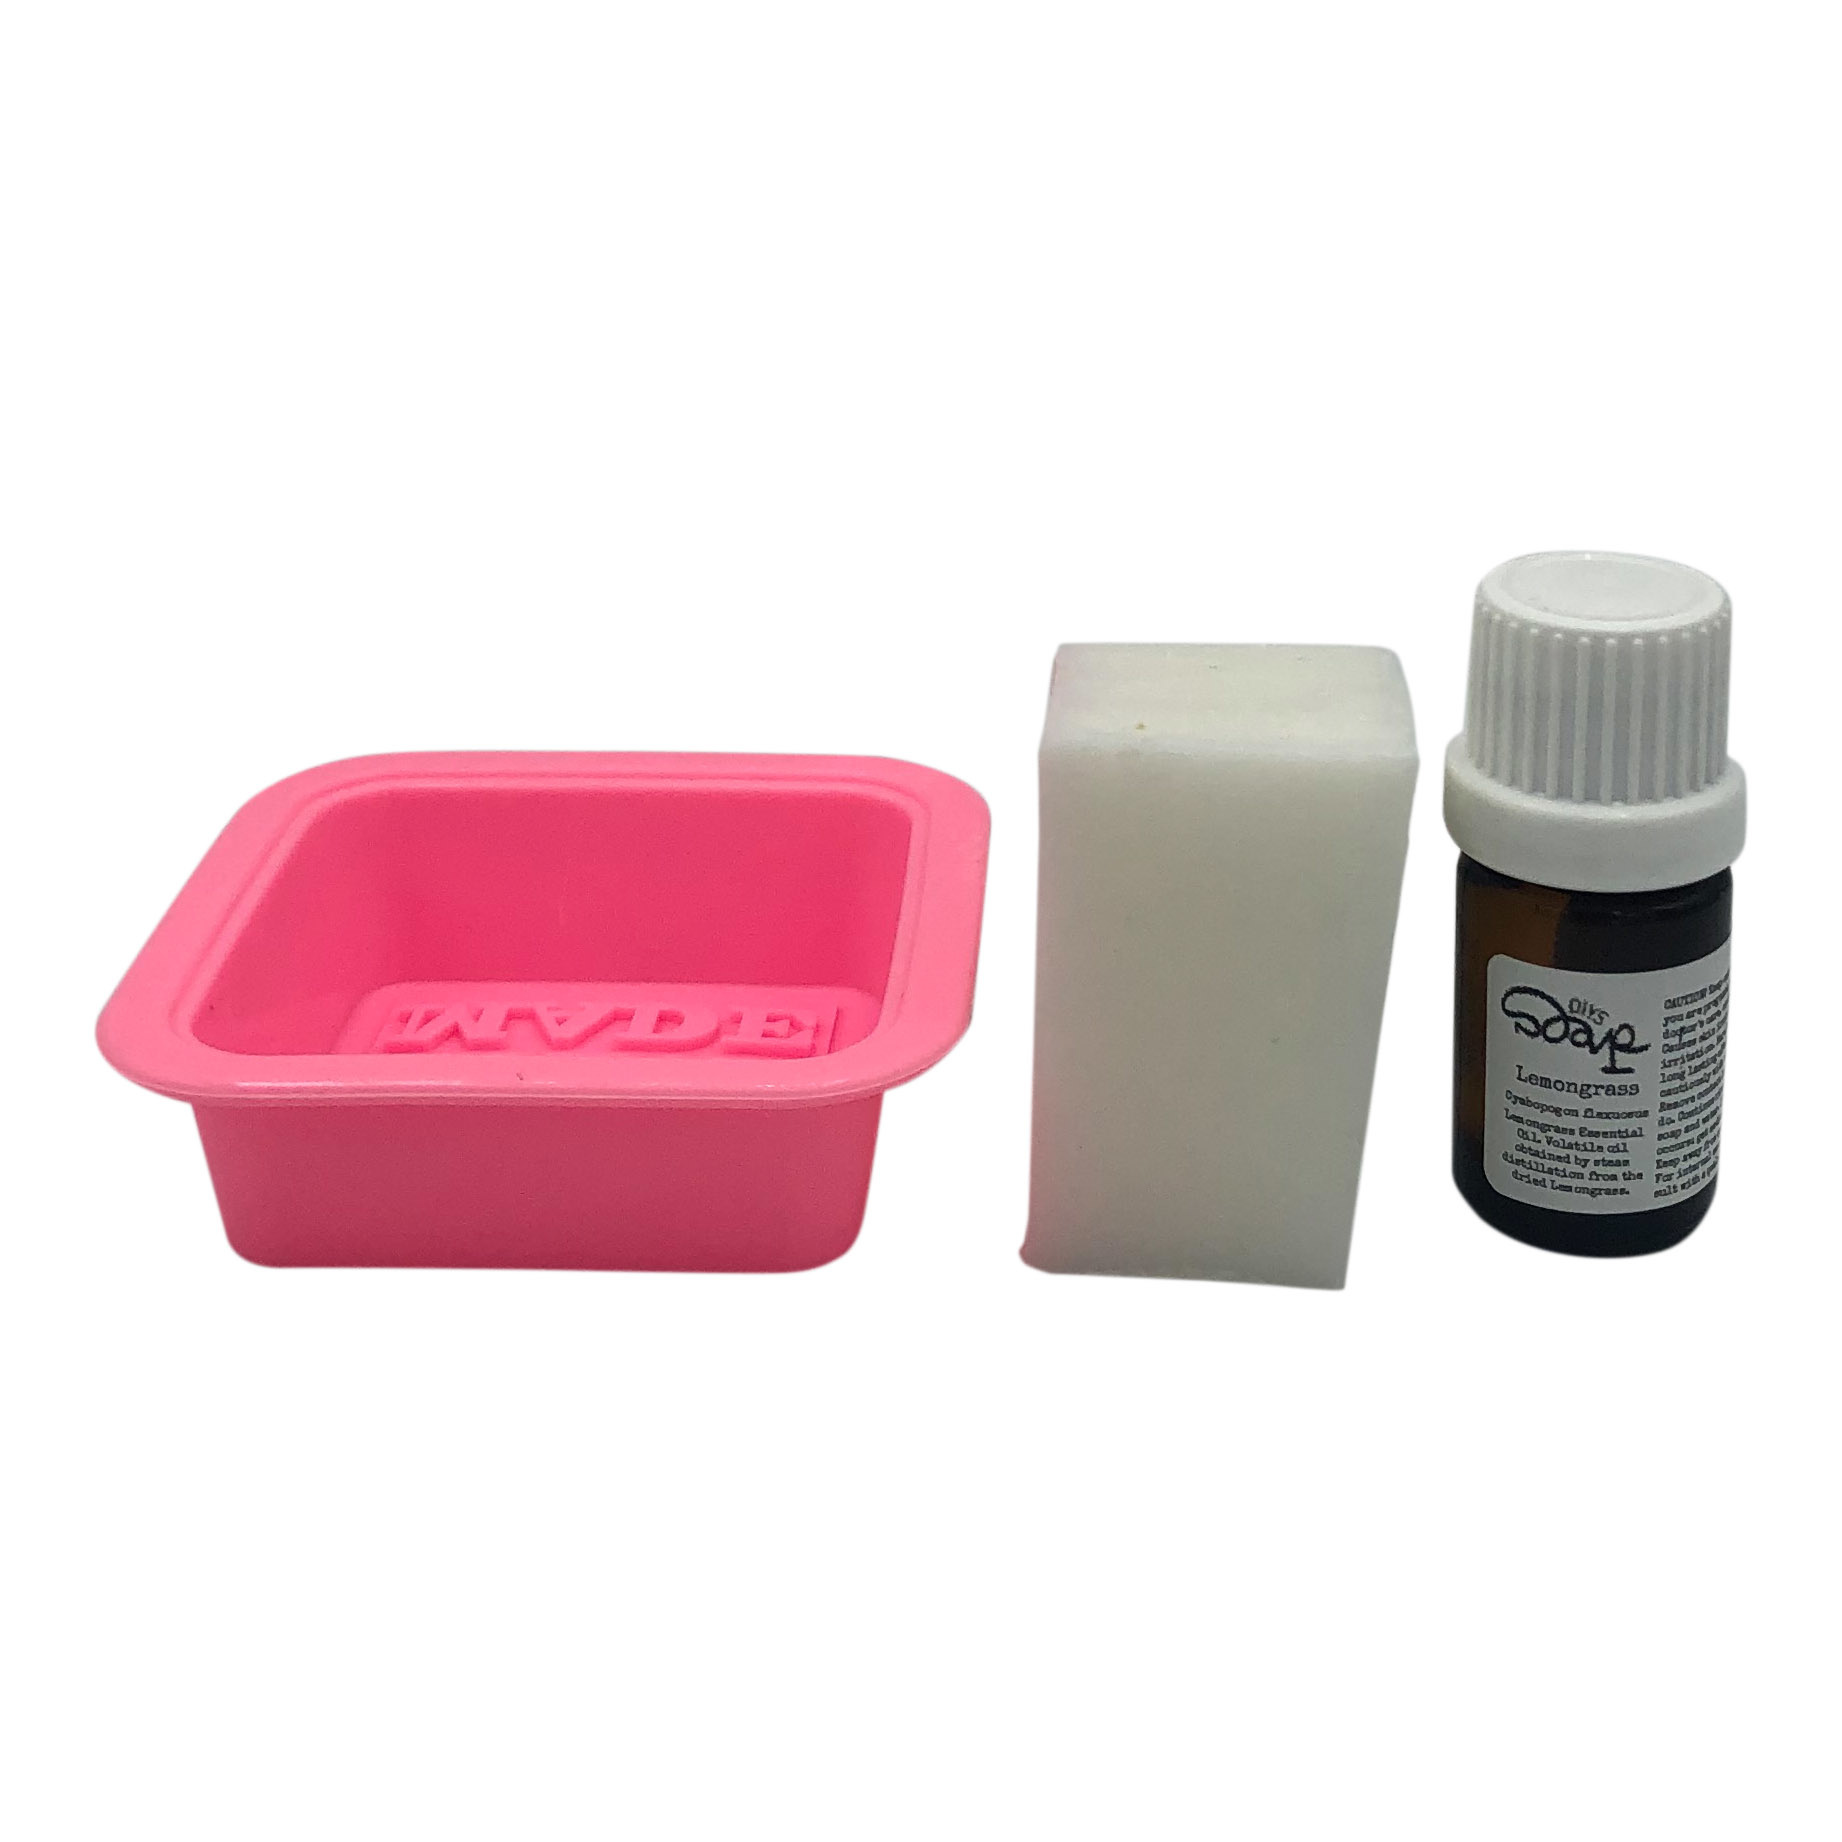 DIY Soap Kit - DIYS Soap